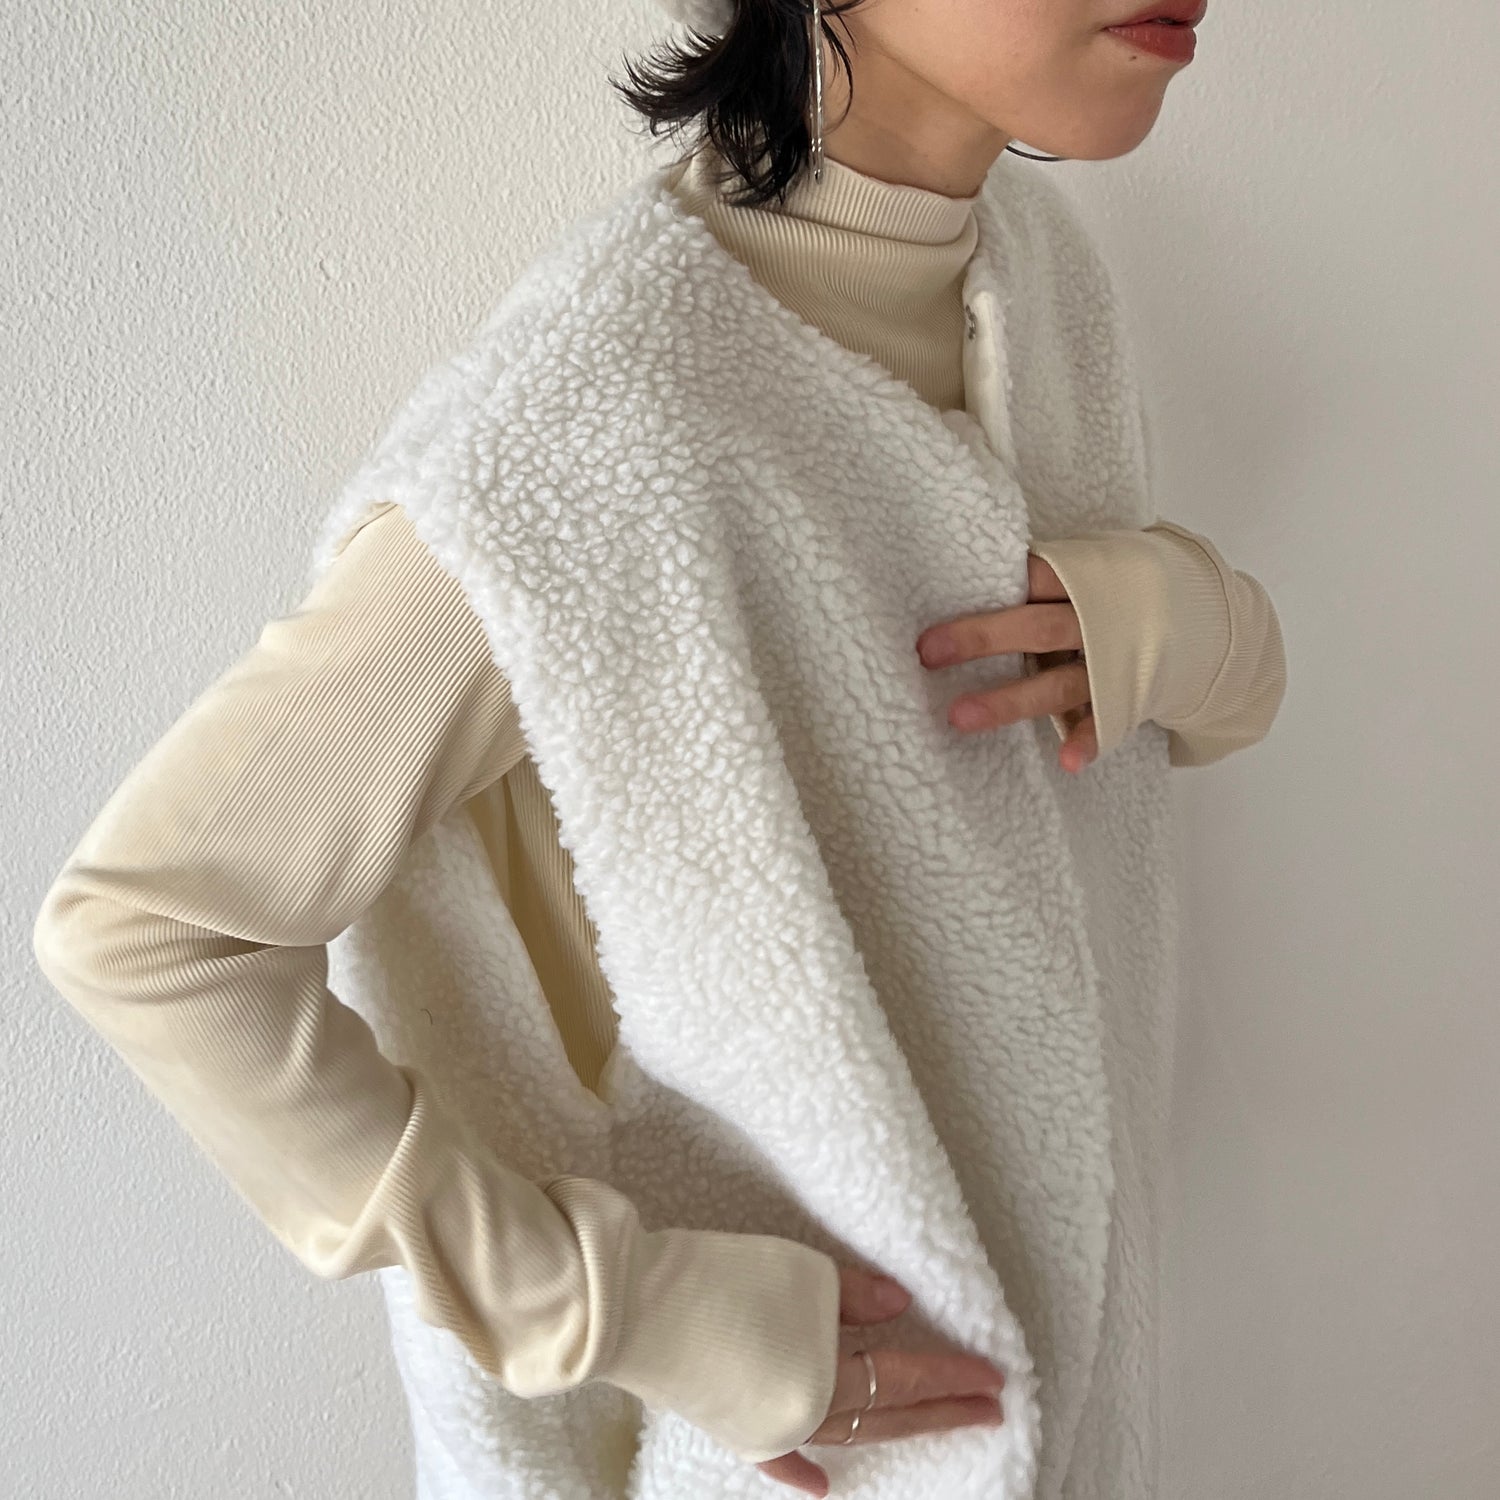 【2点SET】quilting liner coat + boa vest set / ivory